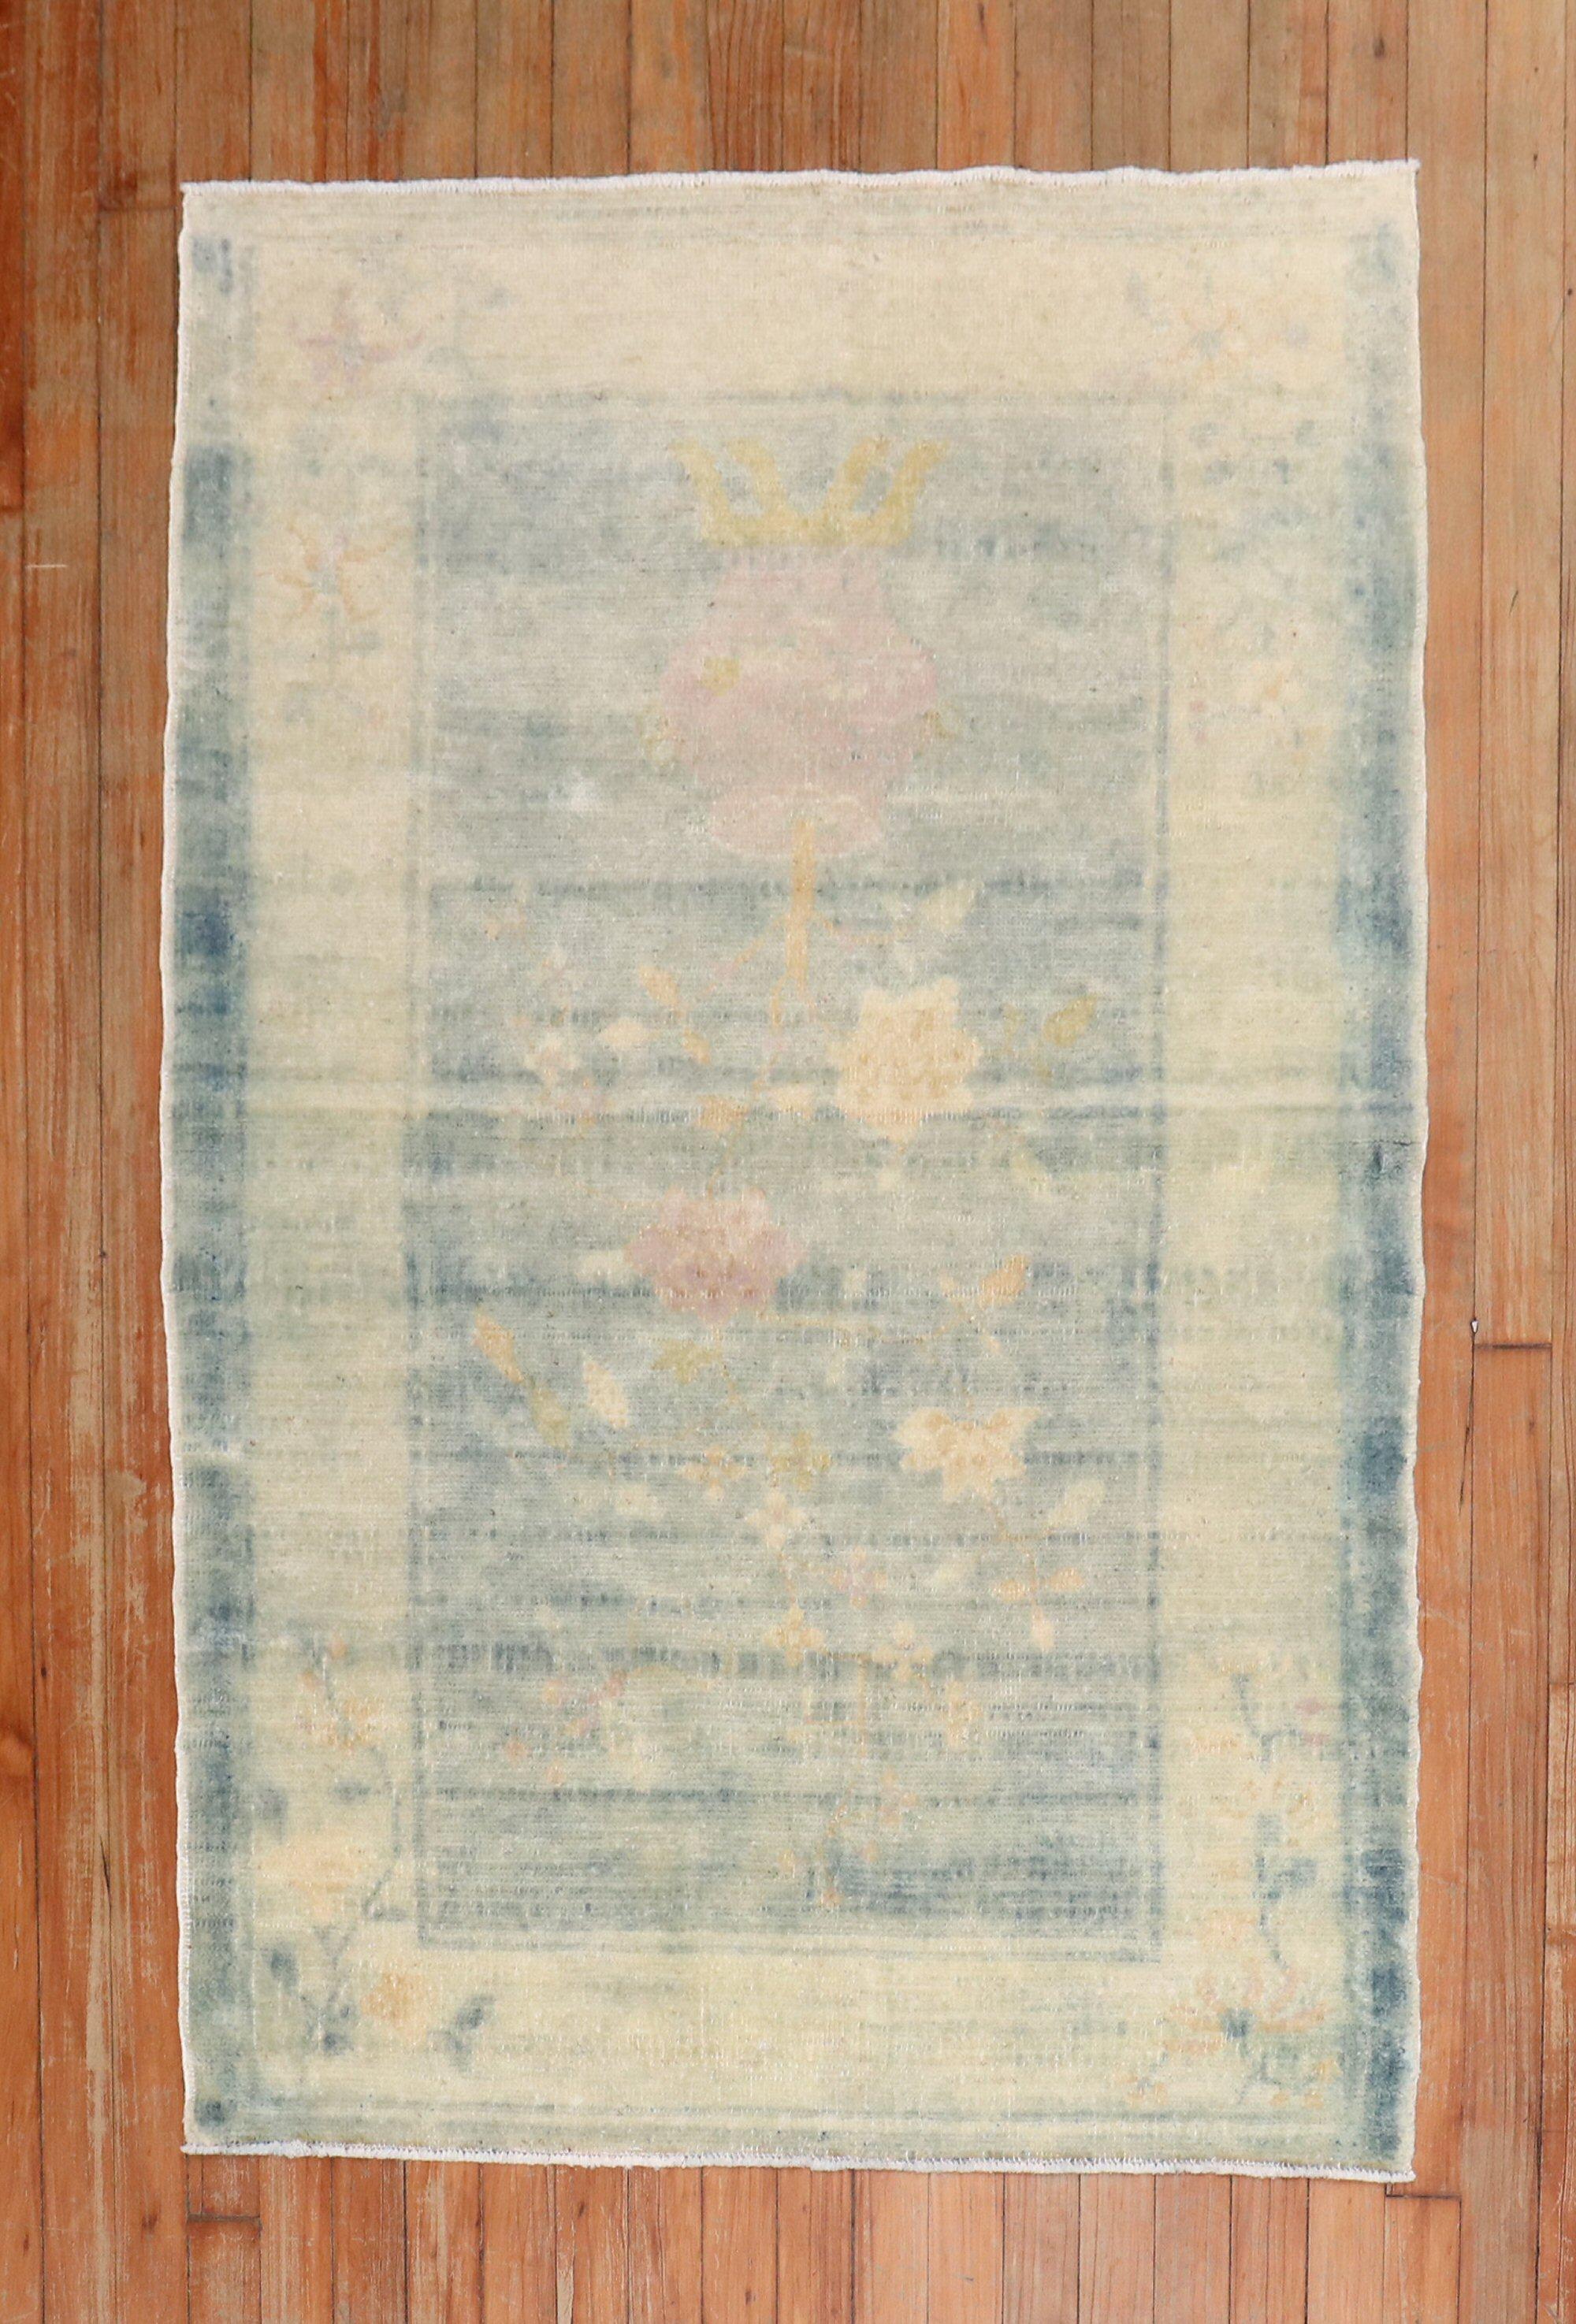 Tapis chinois du début du 20e siècle, de couleur bleue délavée, avec des accents ivoires et roses

Mesures : 3'2 x 4'9''.